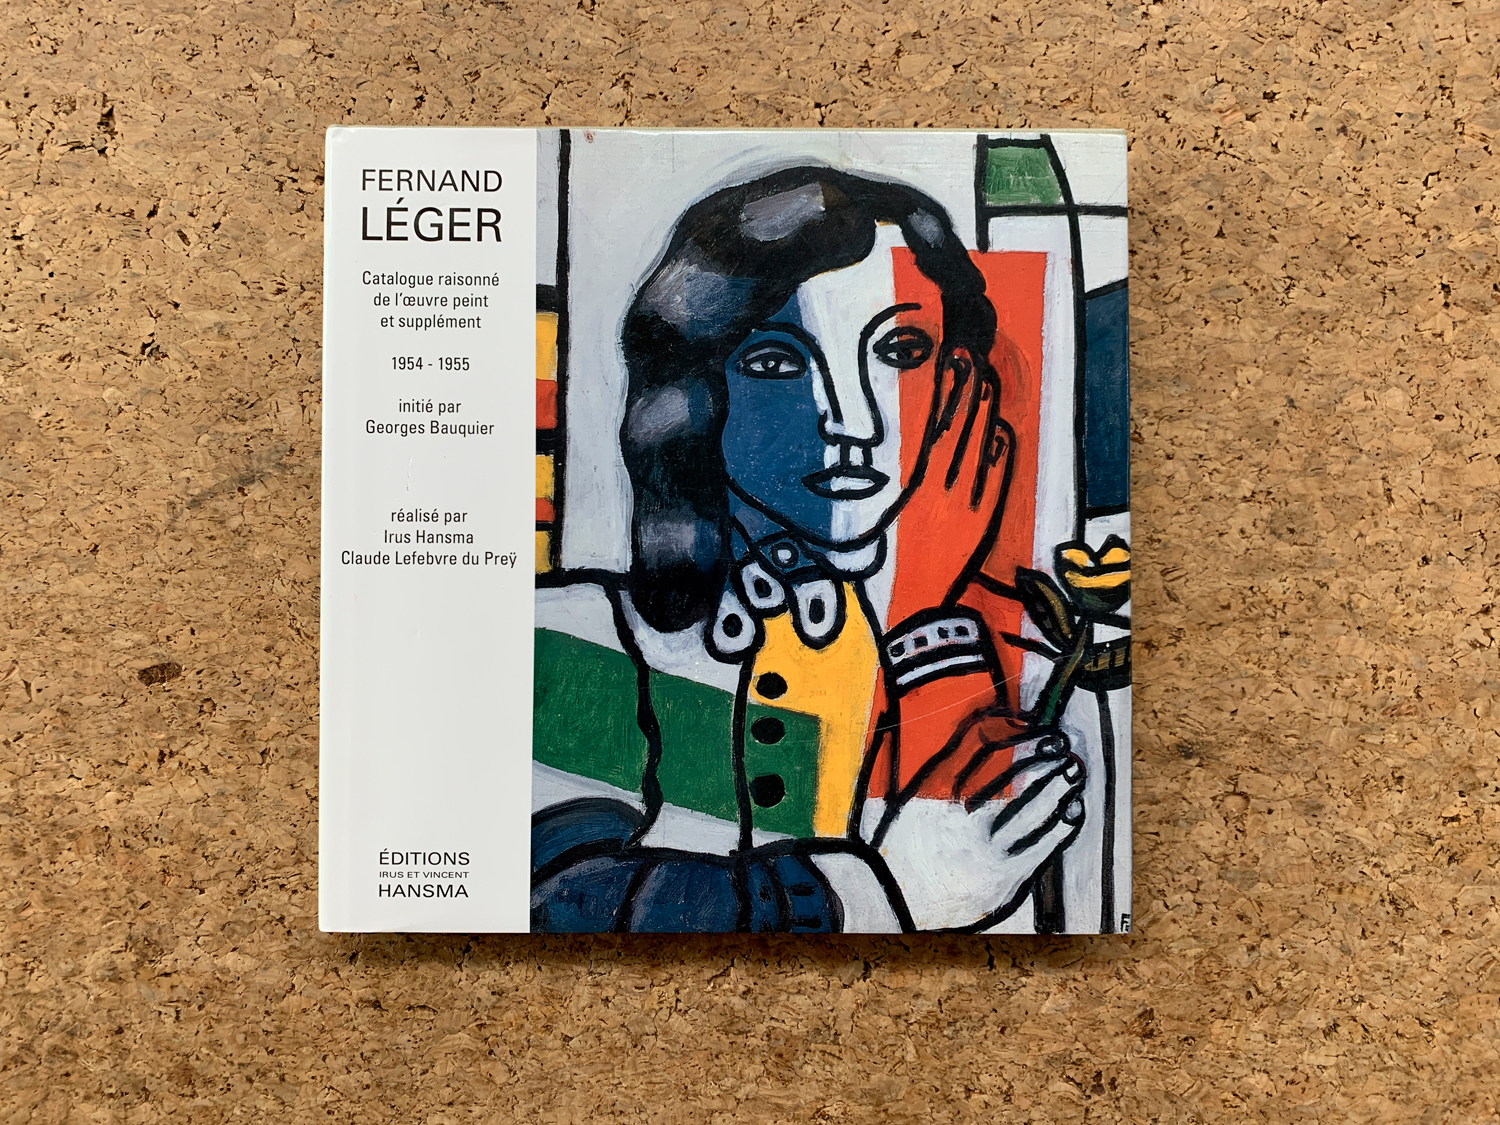 FERNAND LÉGER - Fernand Léger. Catalogue raisonné de l'oeuvre peint et supplément 1954-1955, 2013